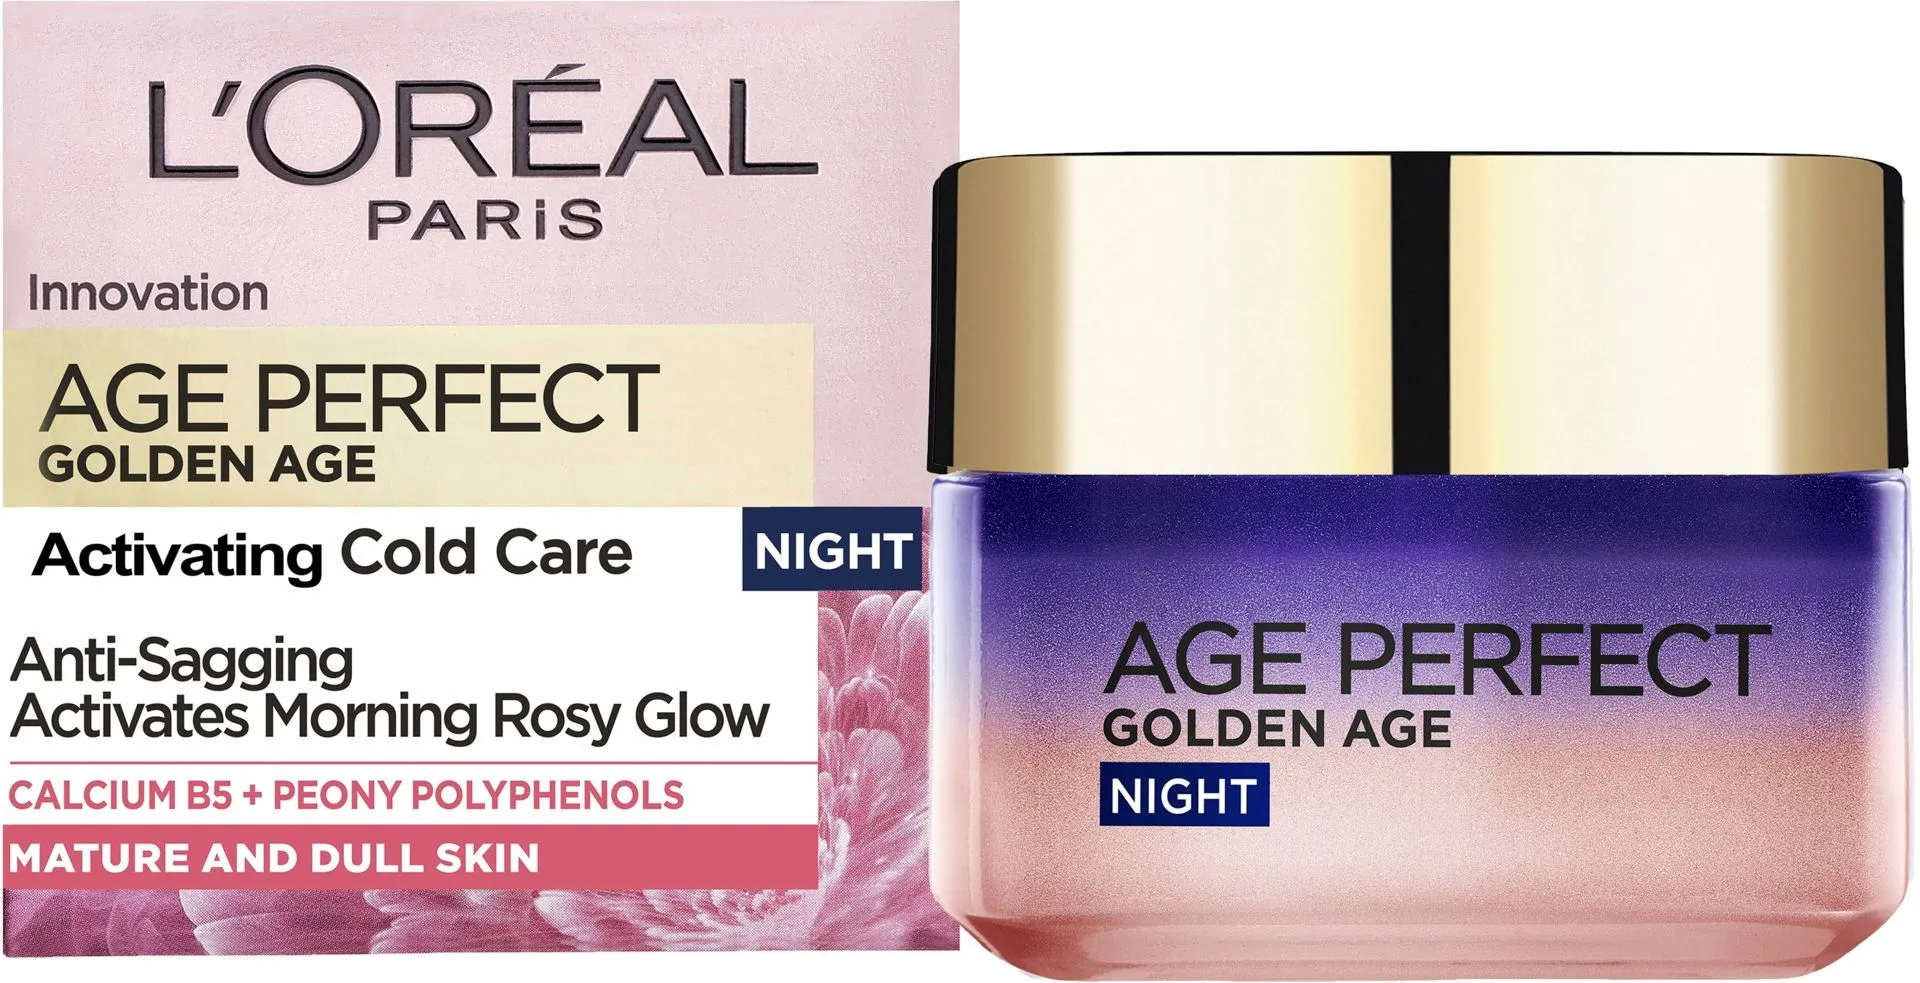 L'Oréal Paris Age Perfect Golden Age Night vahvistava ja kaunistava yövoide 50ml - 2